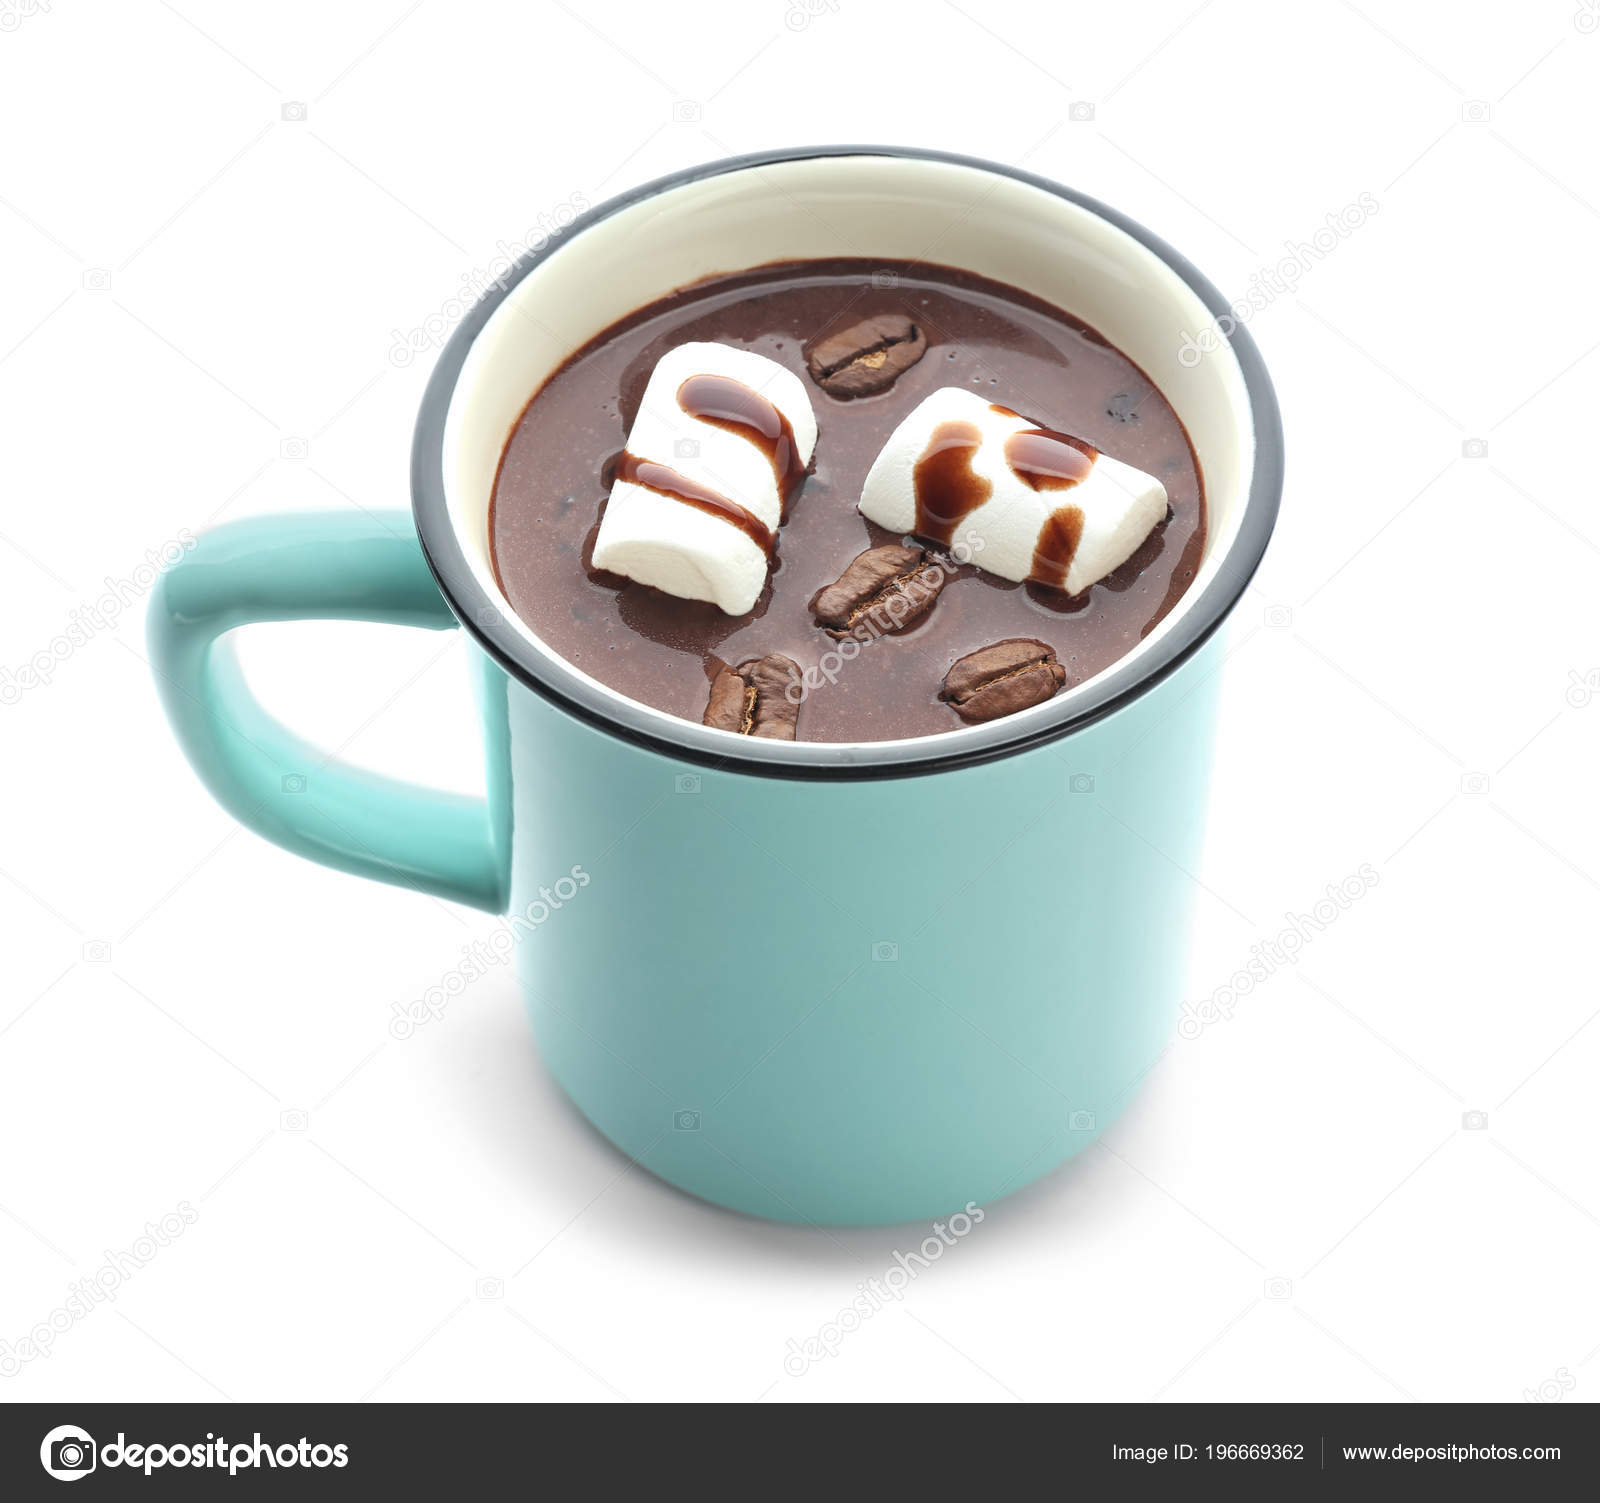 INTERAÇÕES COMUNS ENTRE PERSONAGENS Depositphotos_196669362-stock-photo-cup-hot-chocolate-marshmallow-white